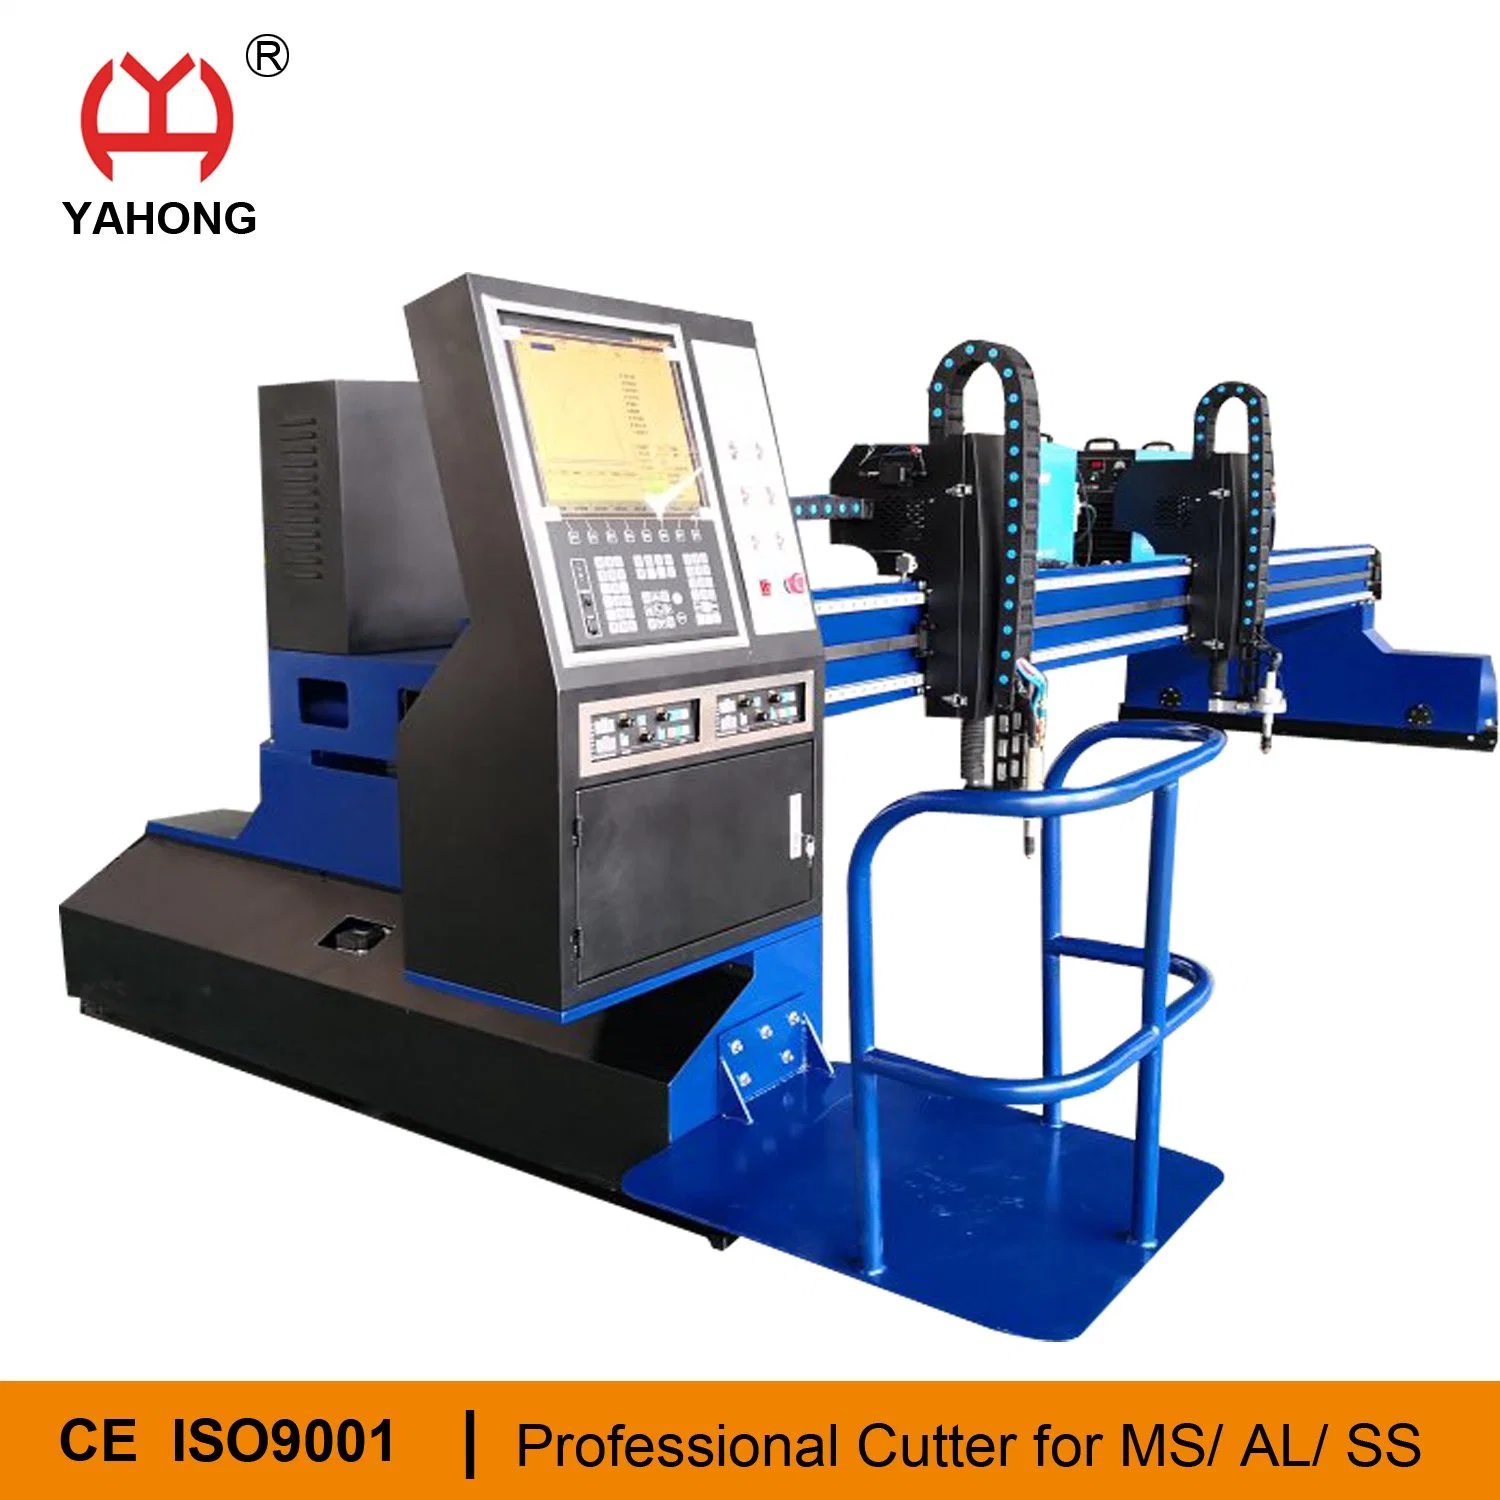 Heavy Duty Gantry CNC Plasma Cutting Machine for Metal with Oxygen Cutting and Plasma Cutting